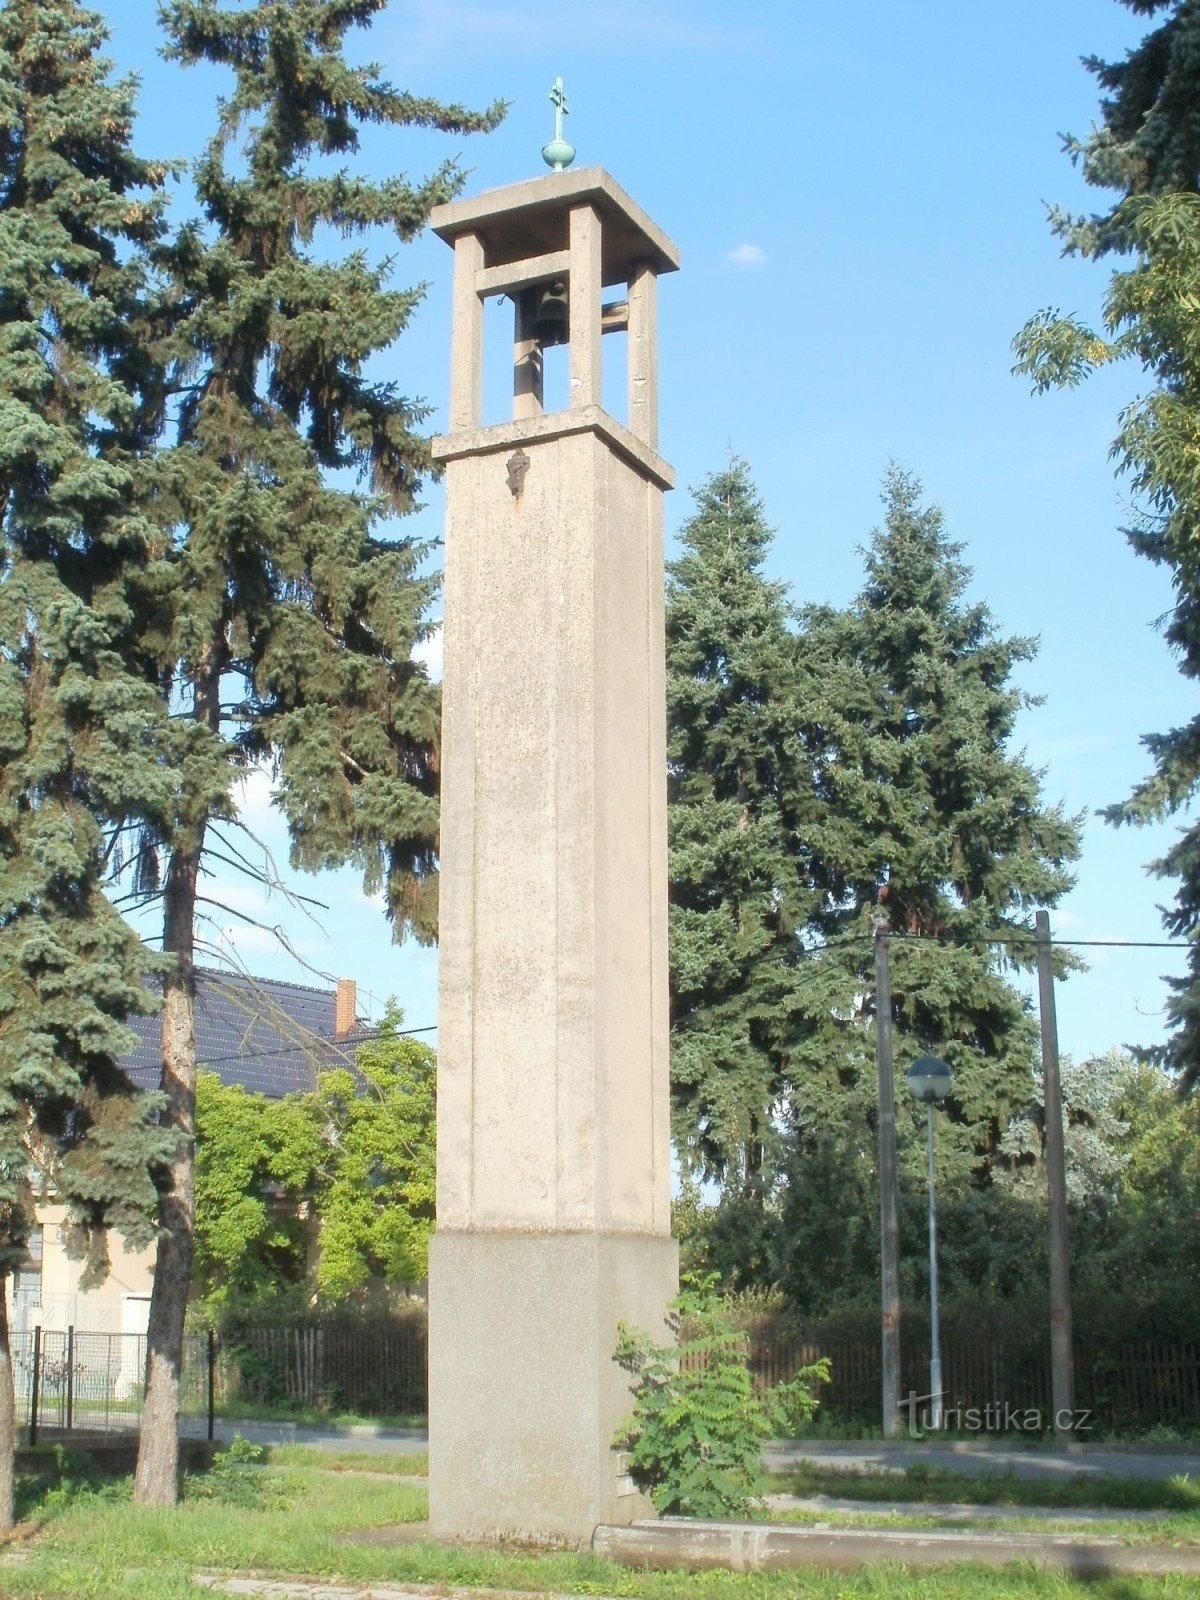 Hradec Králové - tháp chuông ở Pouchov